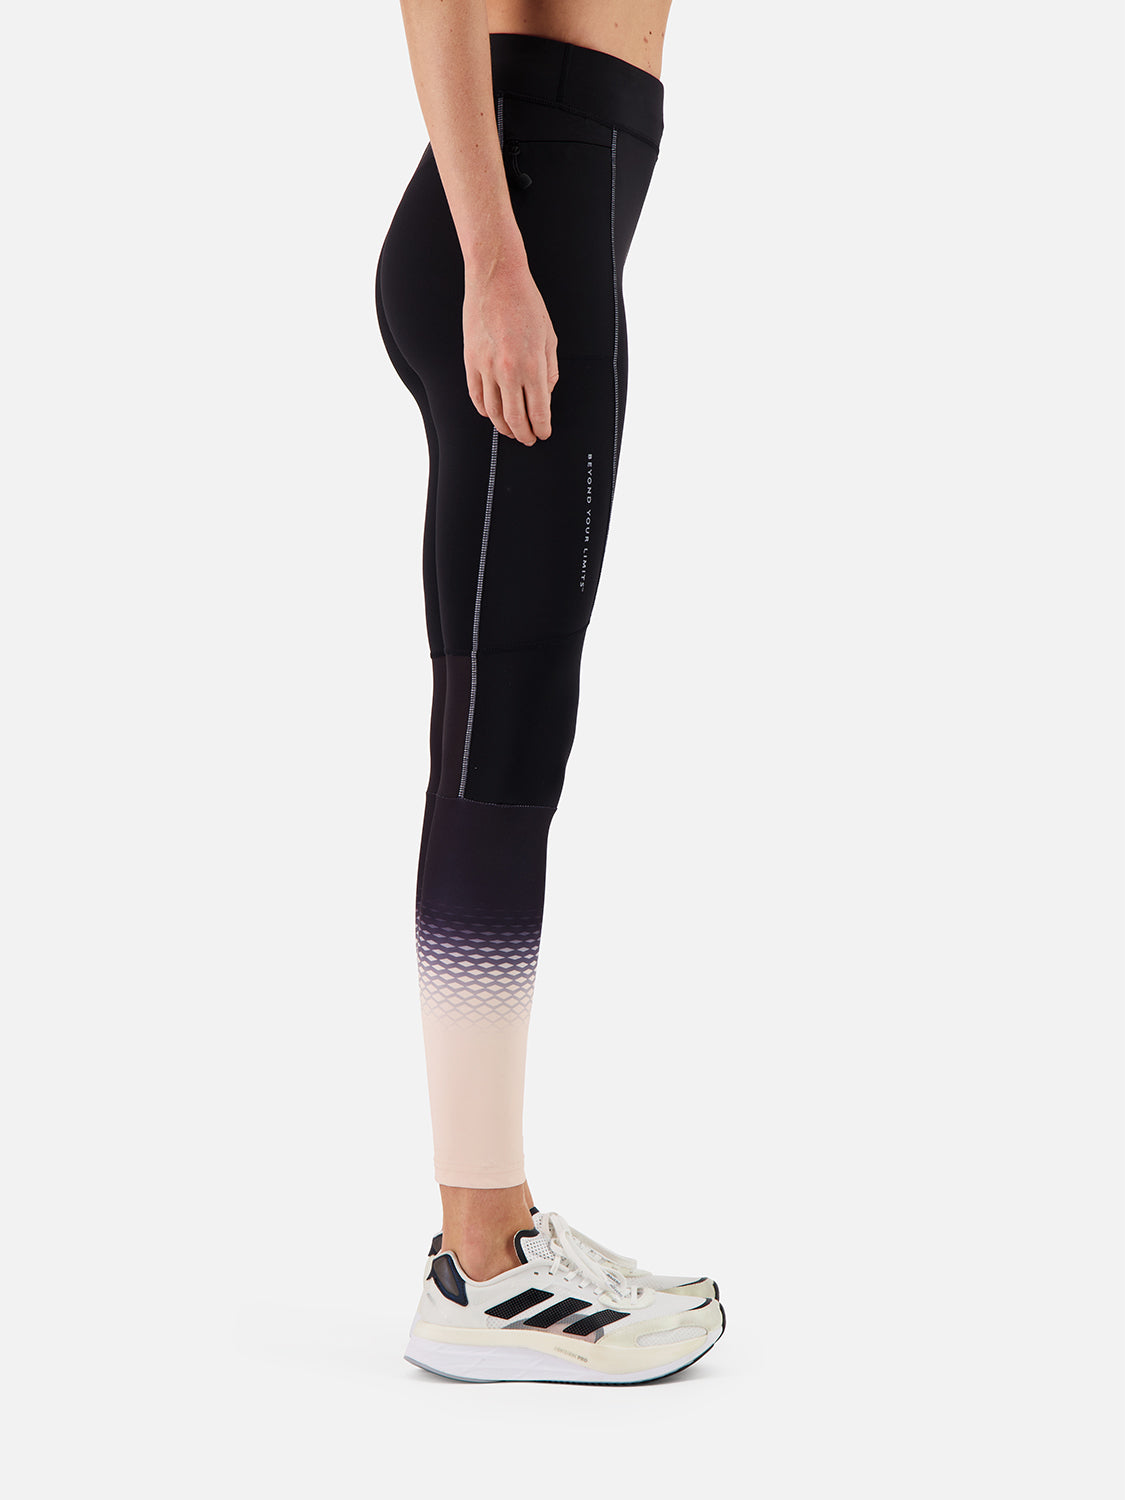 Vêtements de running pour femme - Bodycross